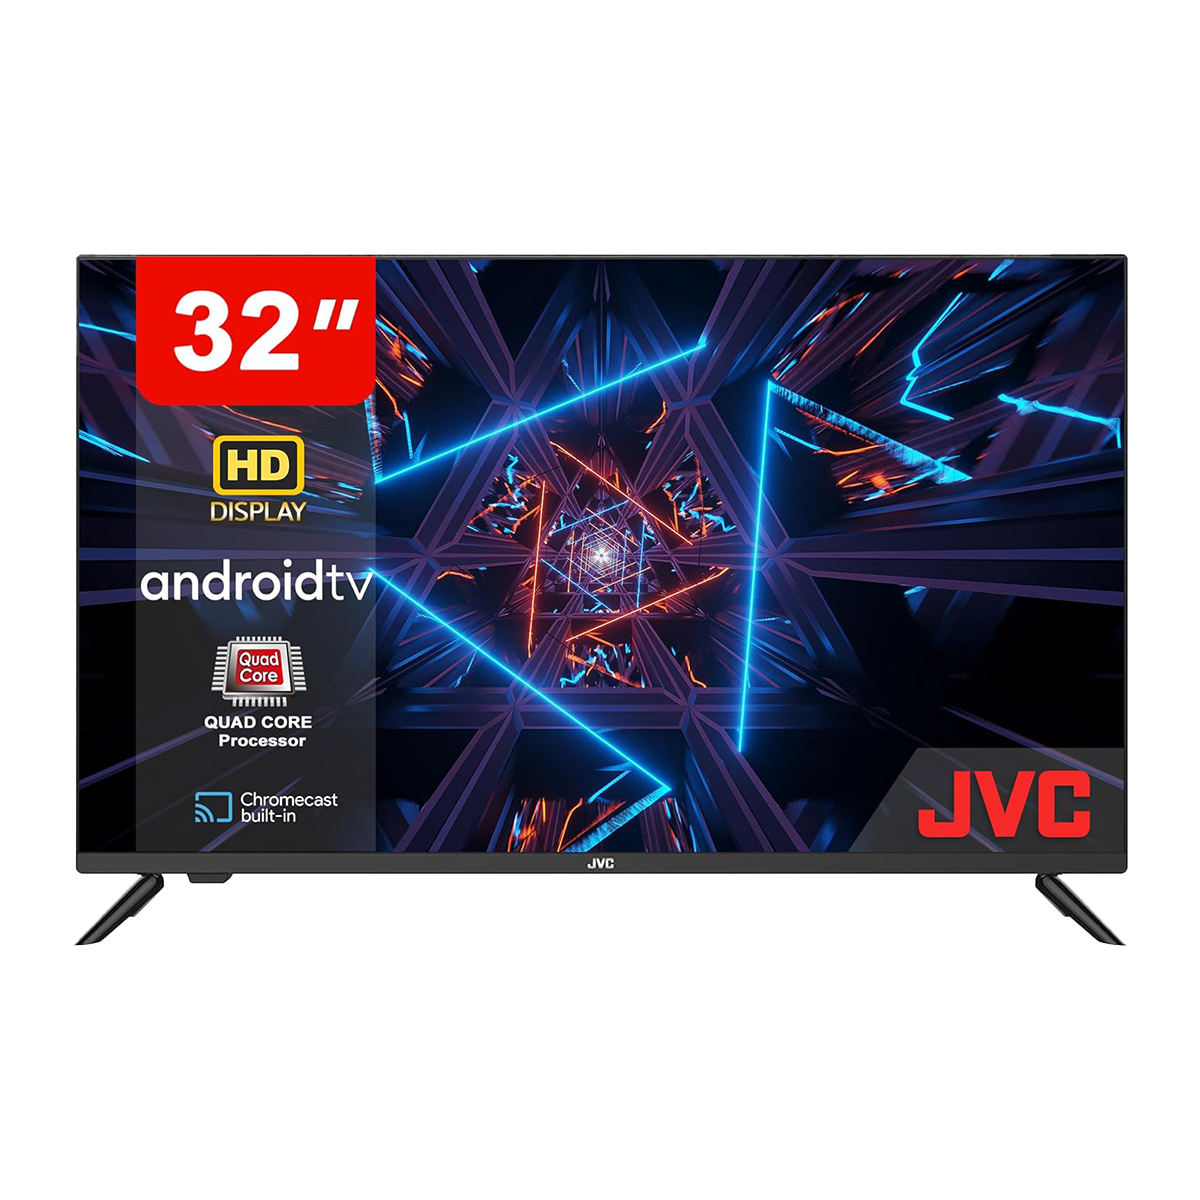 JVC 32 inch Smart TV Full HD Android TV LED Display  AV-H323115A11